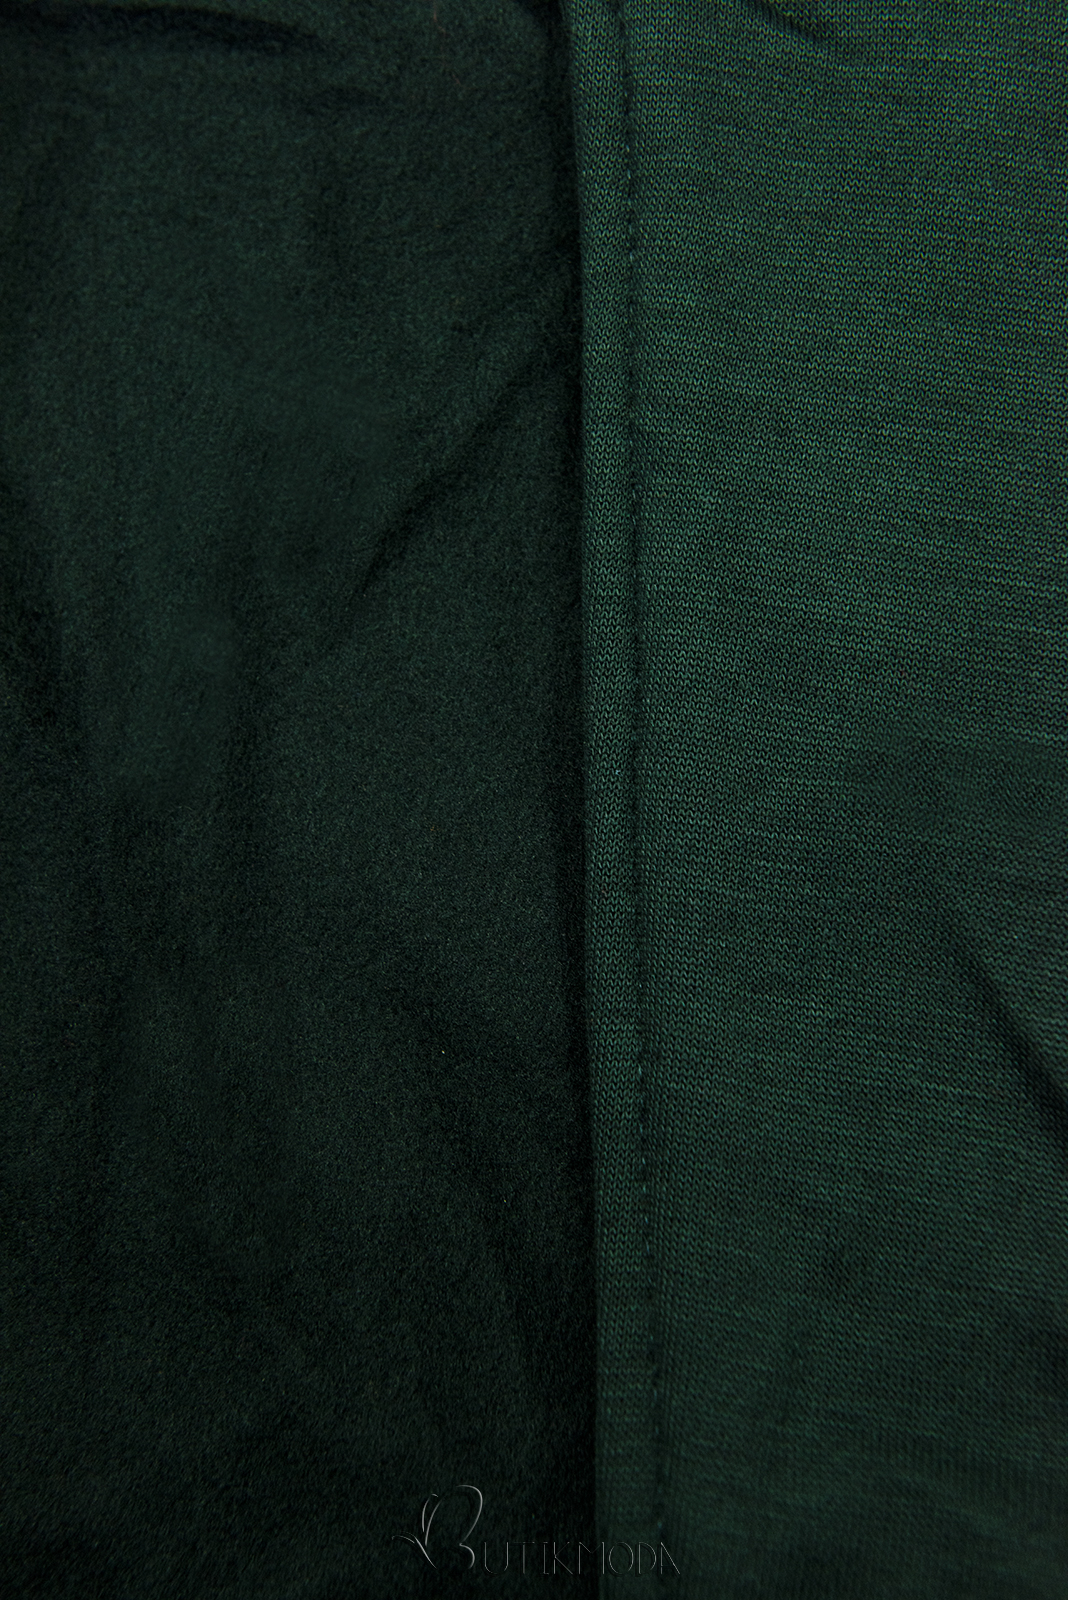 Hanorac lung verde smarald cu fermoar asimetric